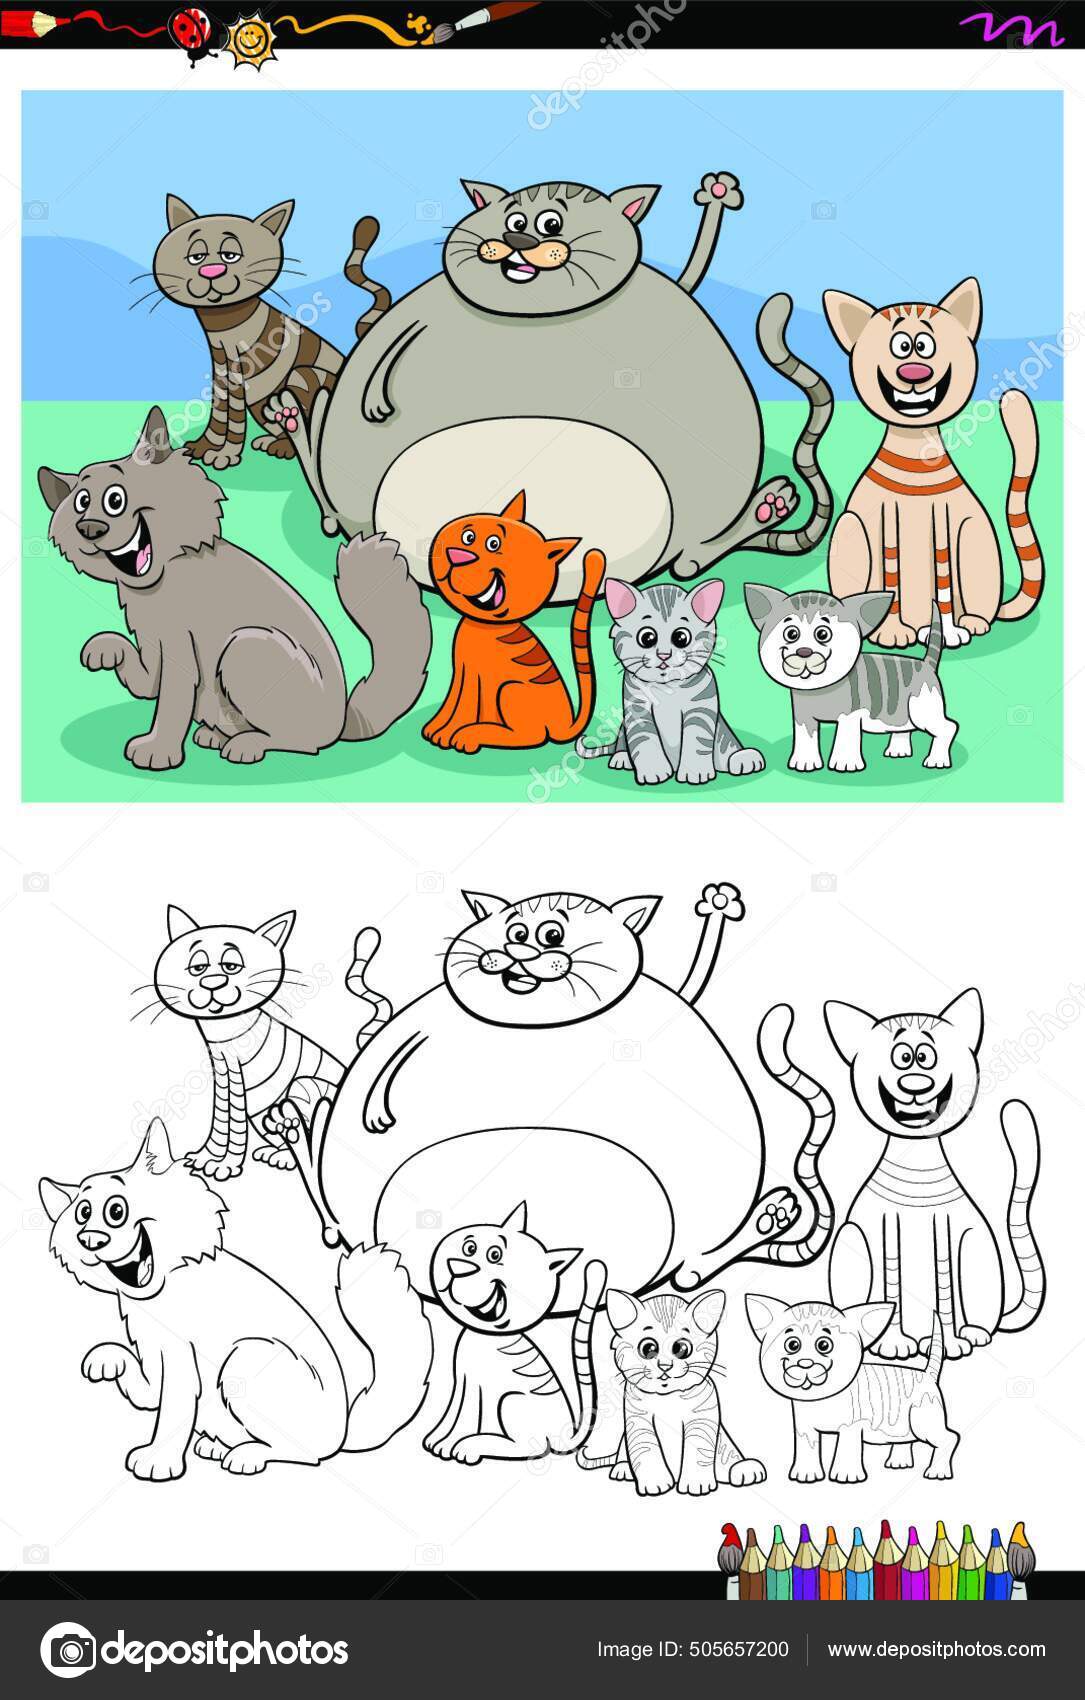 Vetores e ilustrações de Gatos desenhos animados para download gratuito